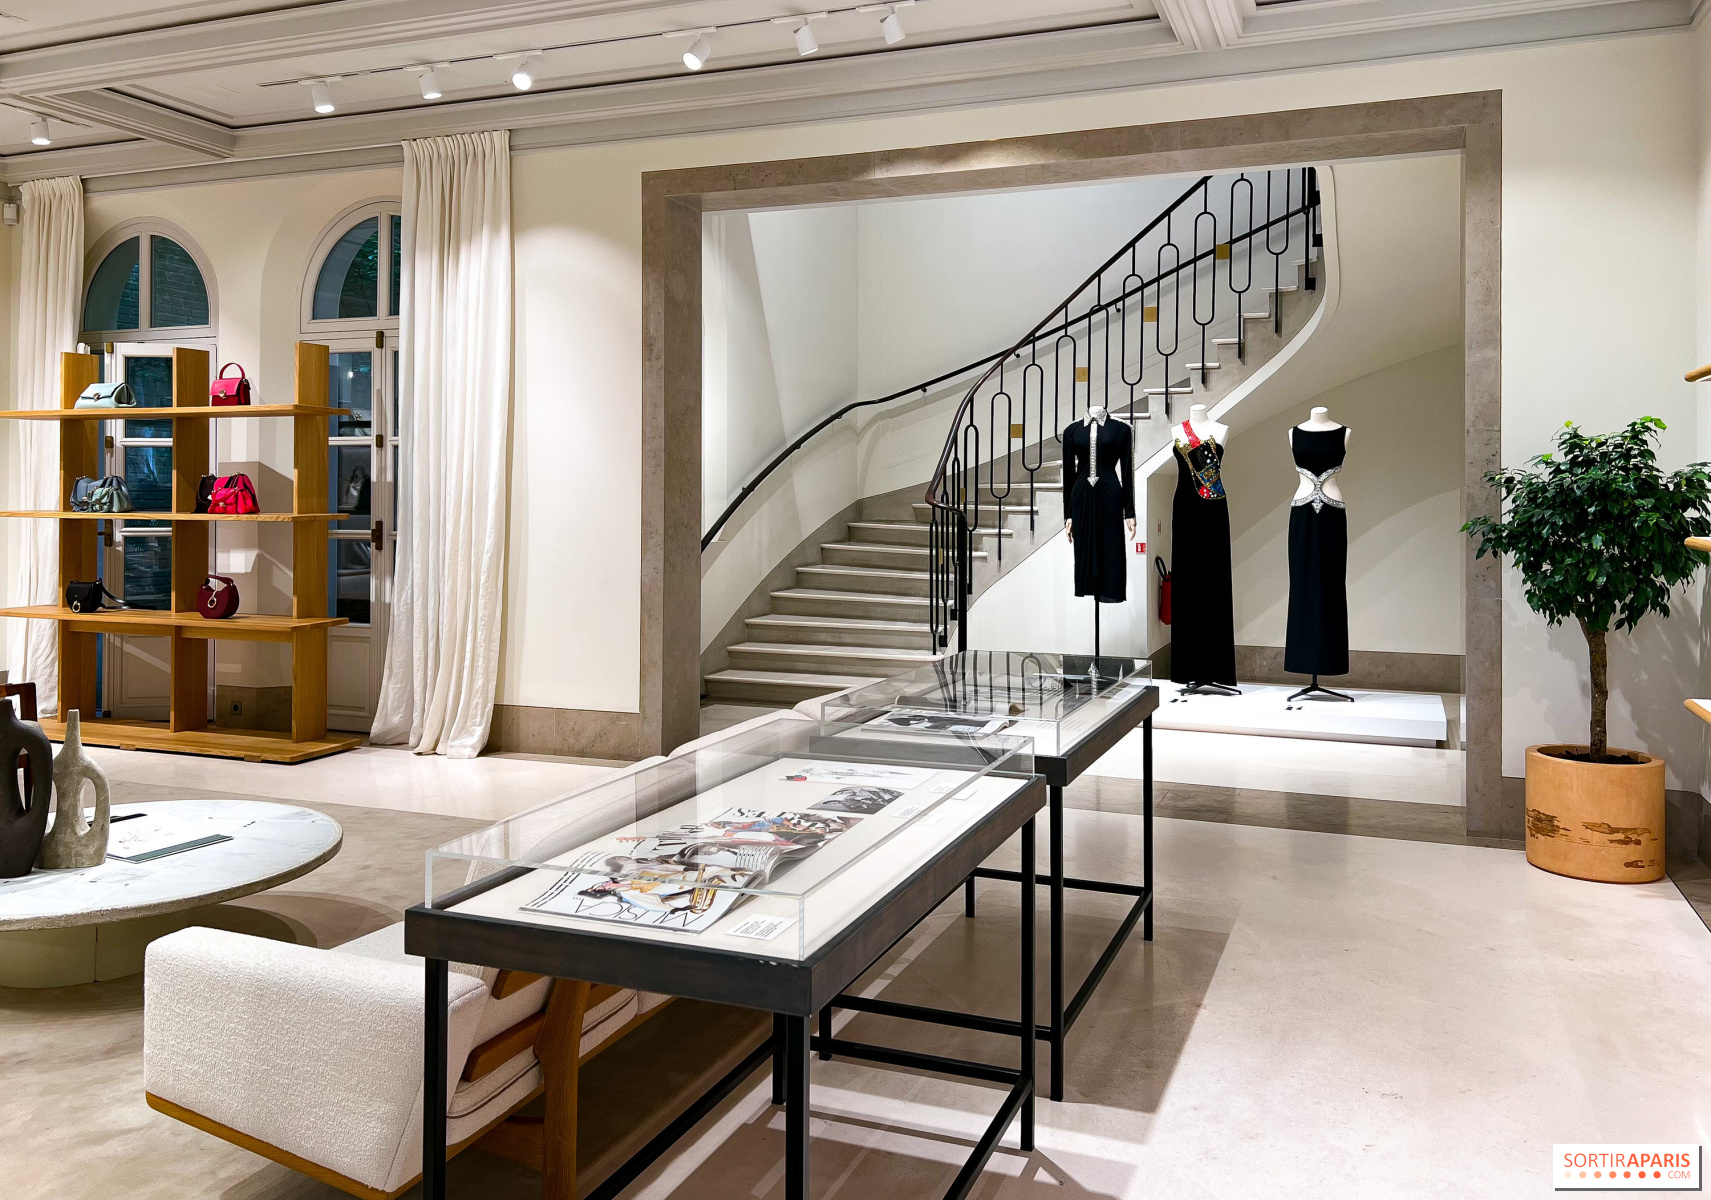 Karl Lagerfeld Designt Für Louis Vuitton